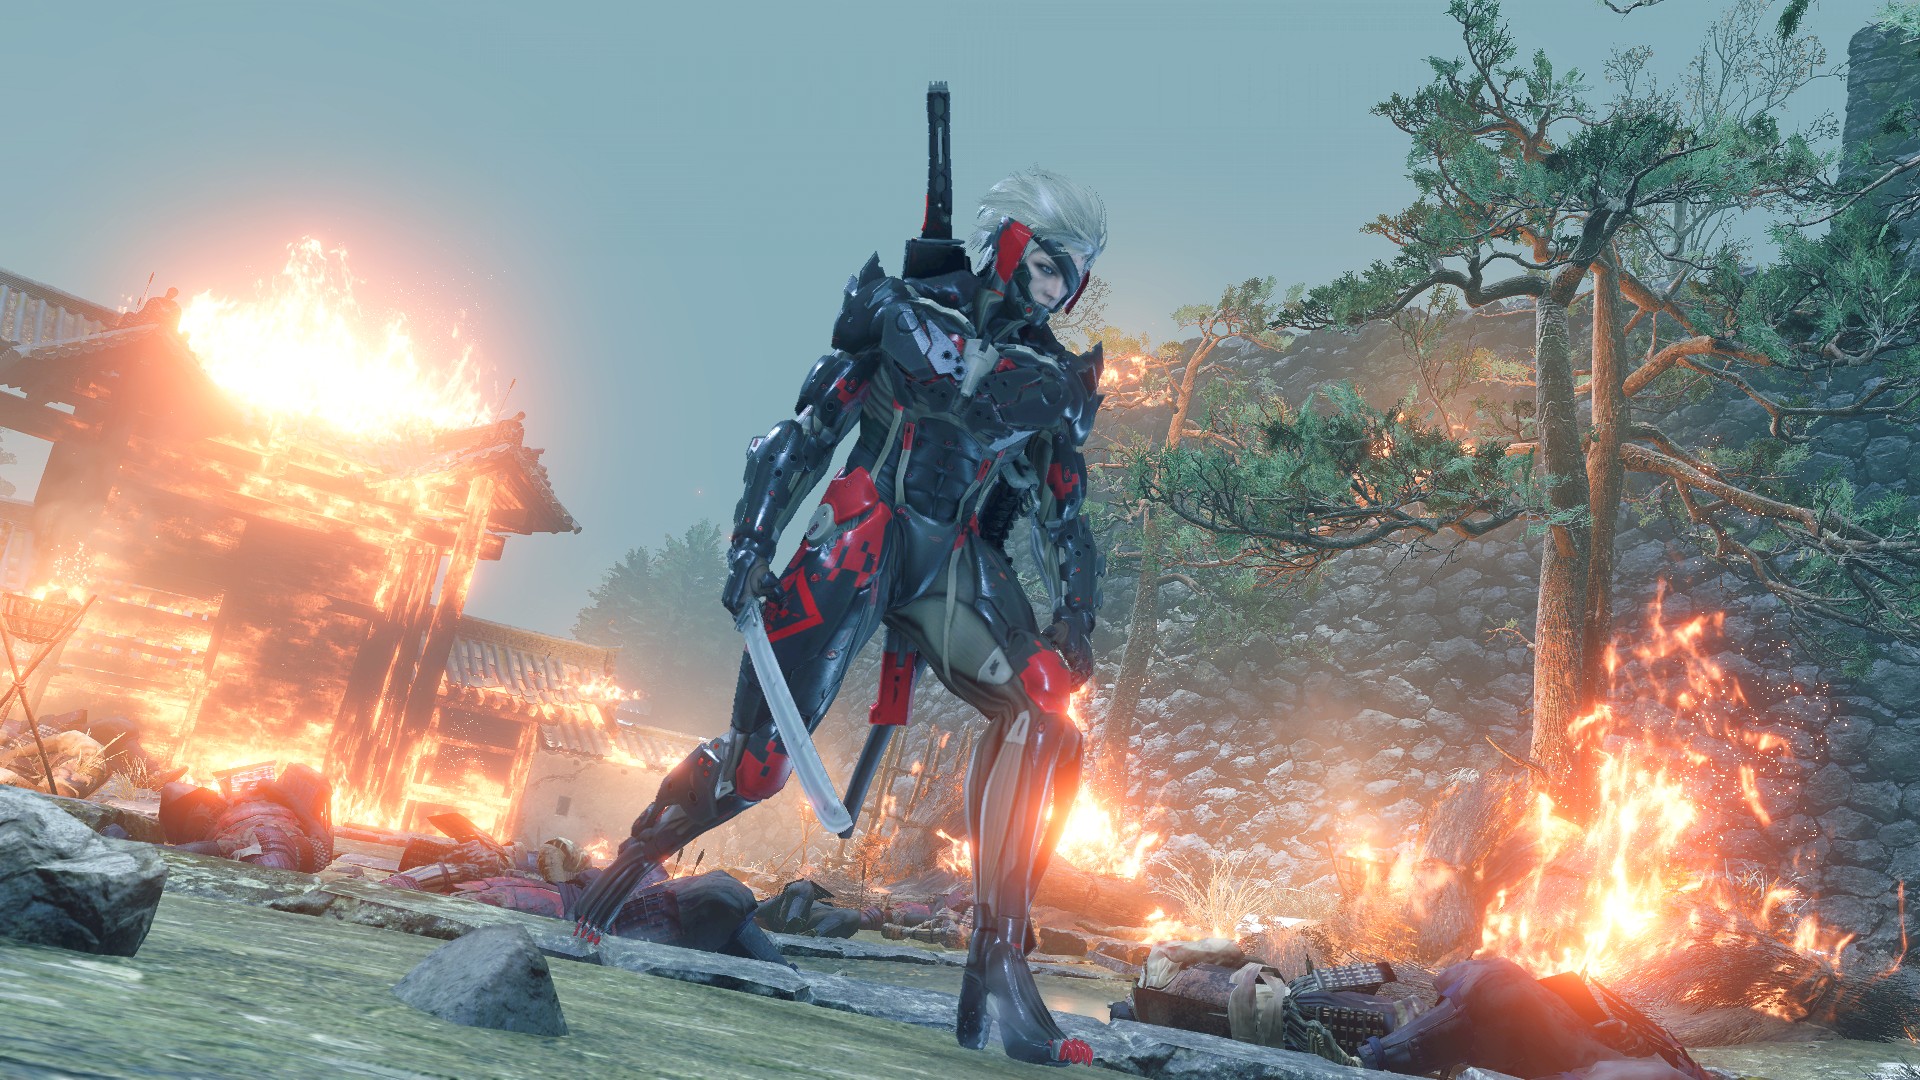 Le mod Sekiro vous permet de jouer en tant que Raiden de Metal Gear Rising